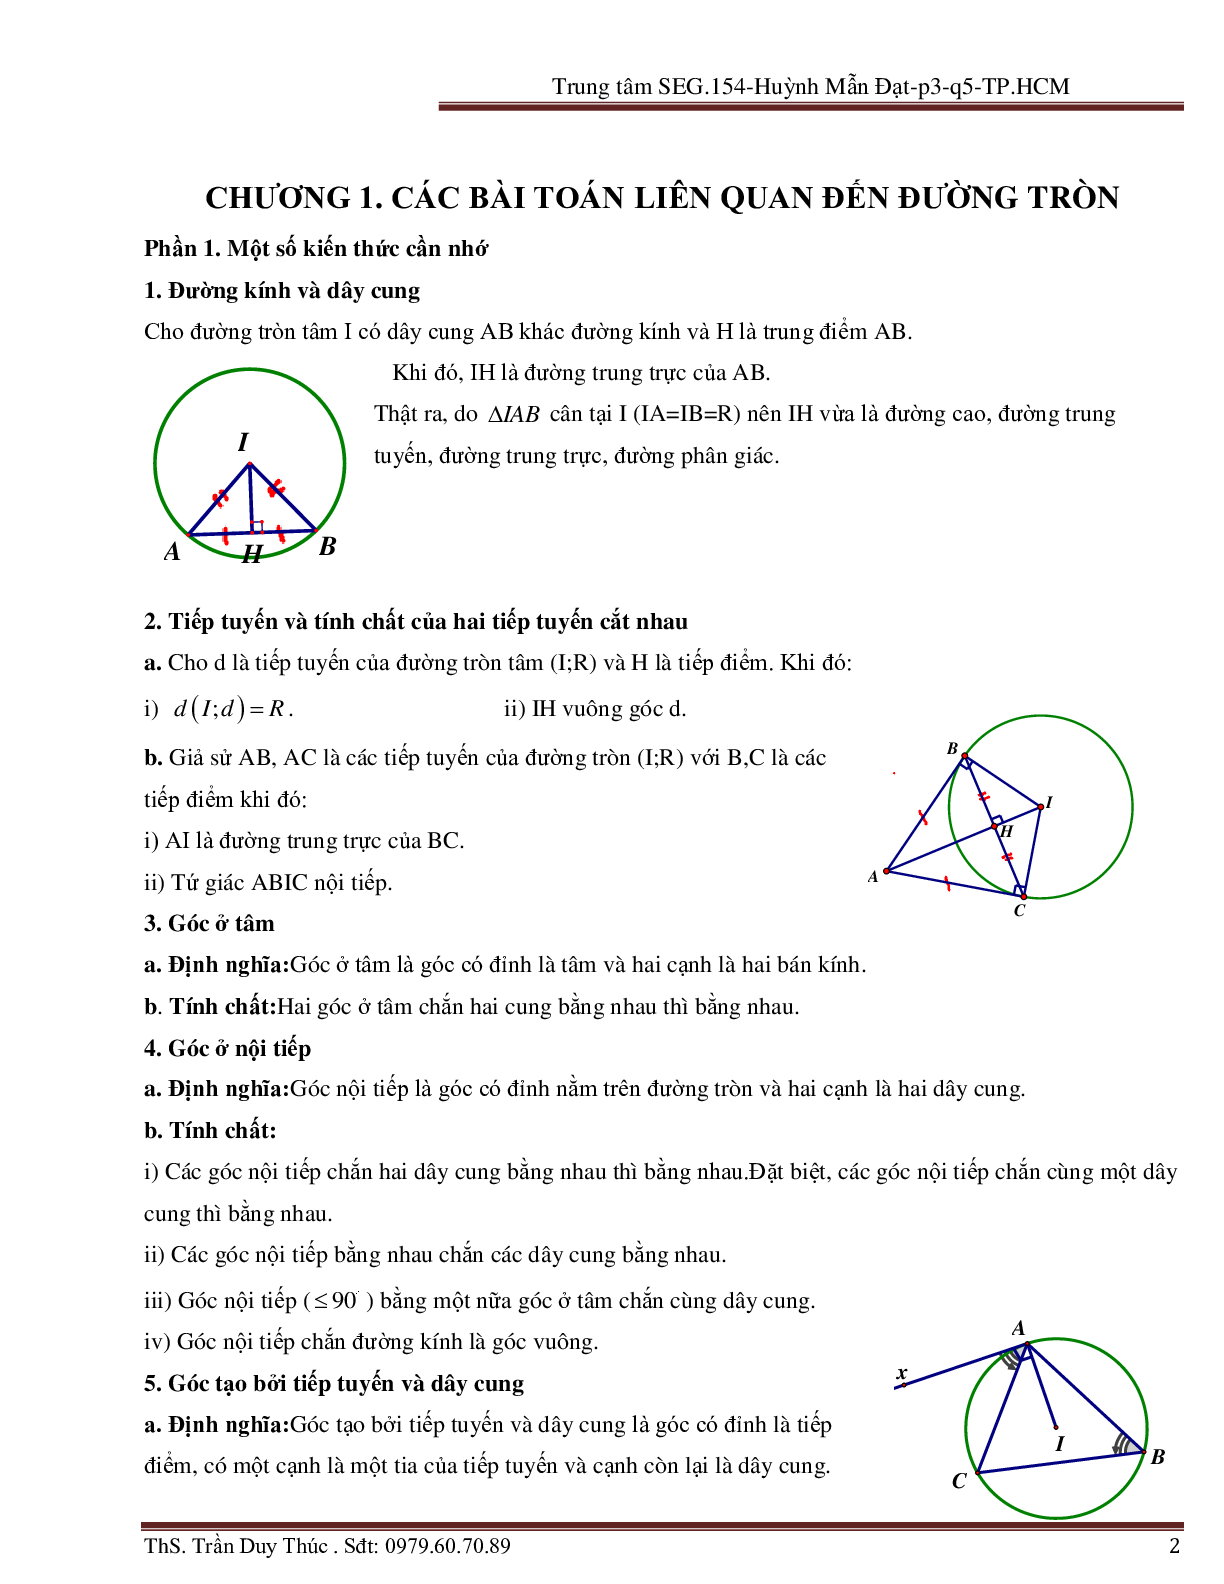 Vận dụng tính chất hình phẳng để giải bài toán Oxy liên quan đến đường tròn (trang 2)